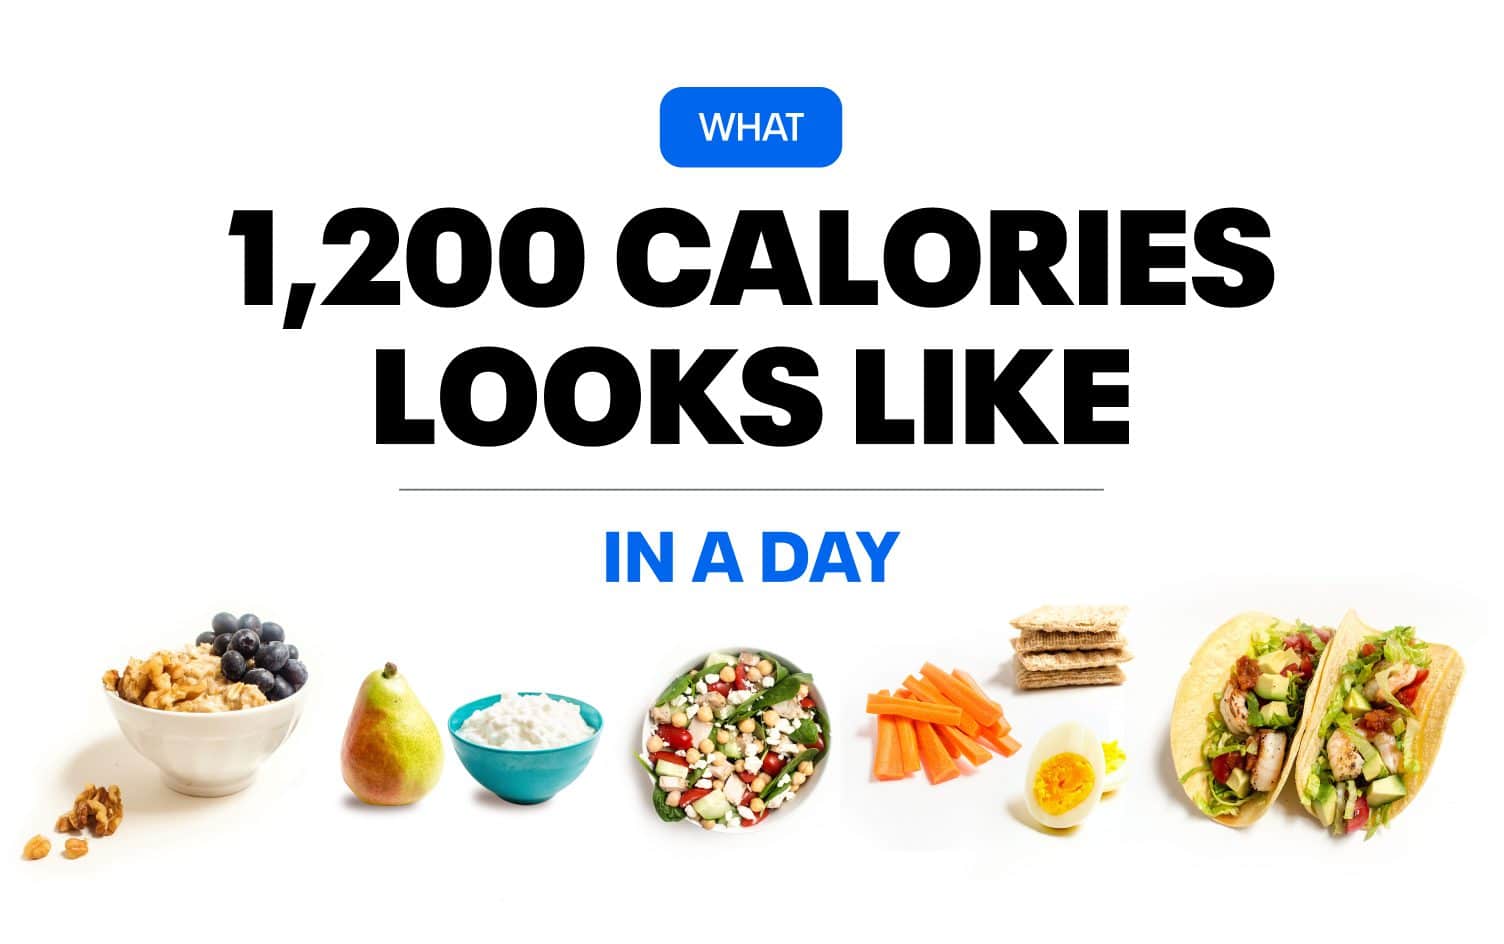 Dieta 1200 calorias endocrino